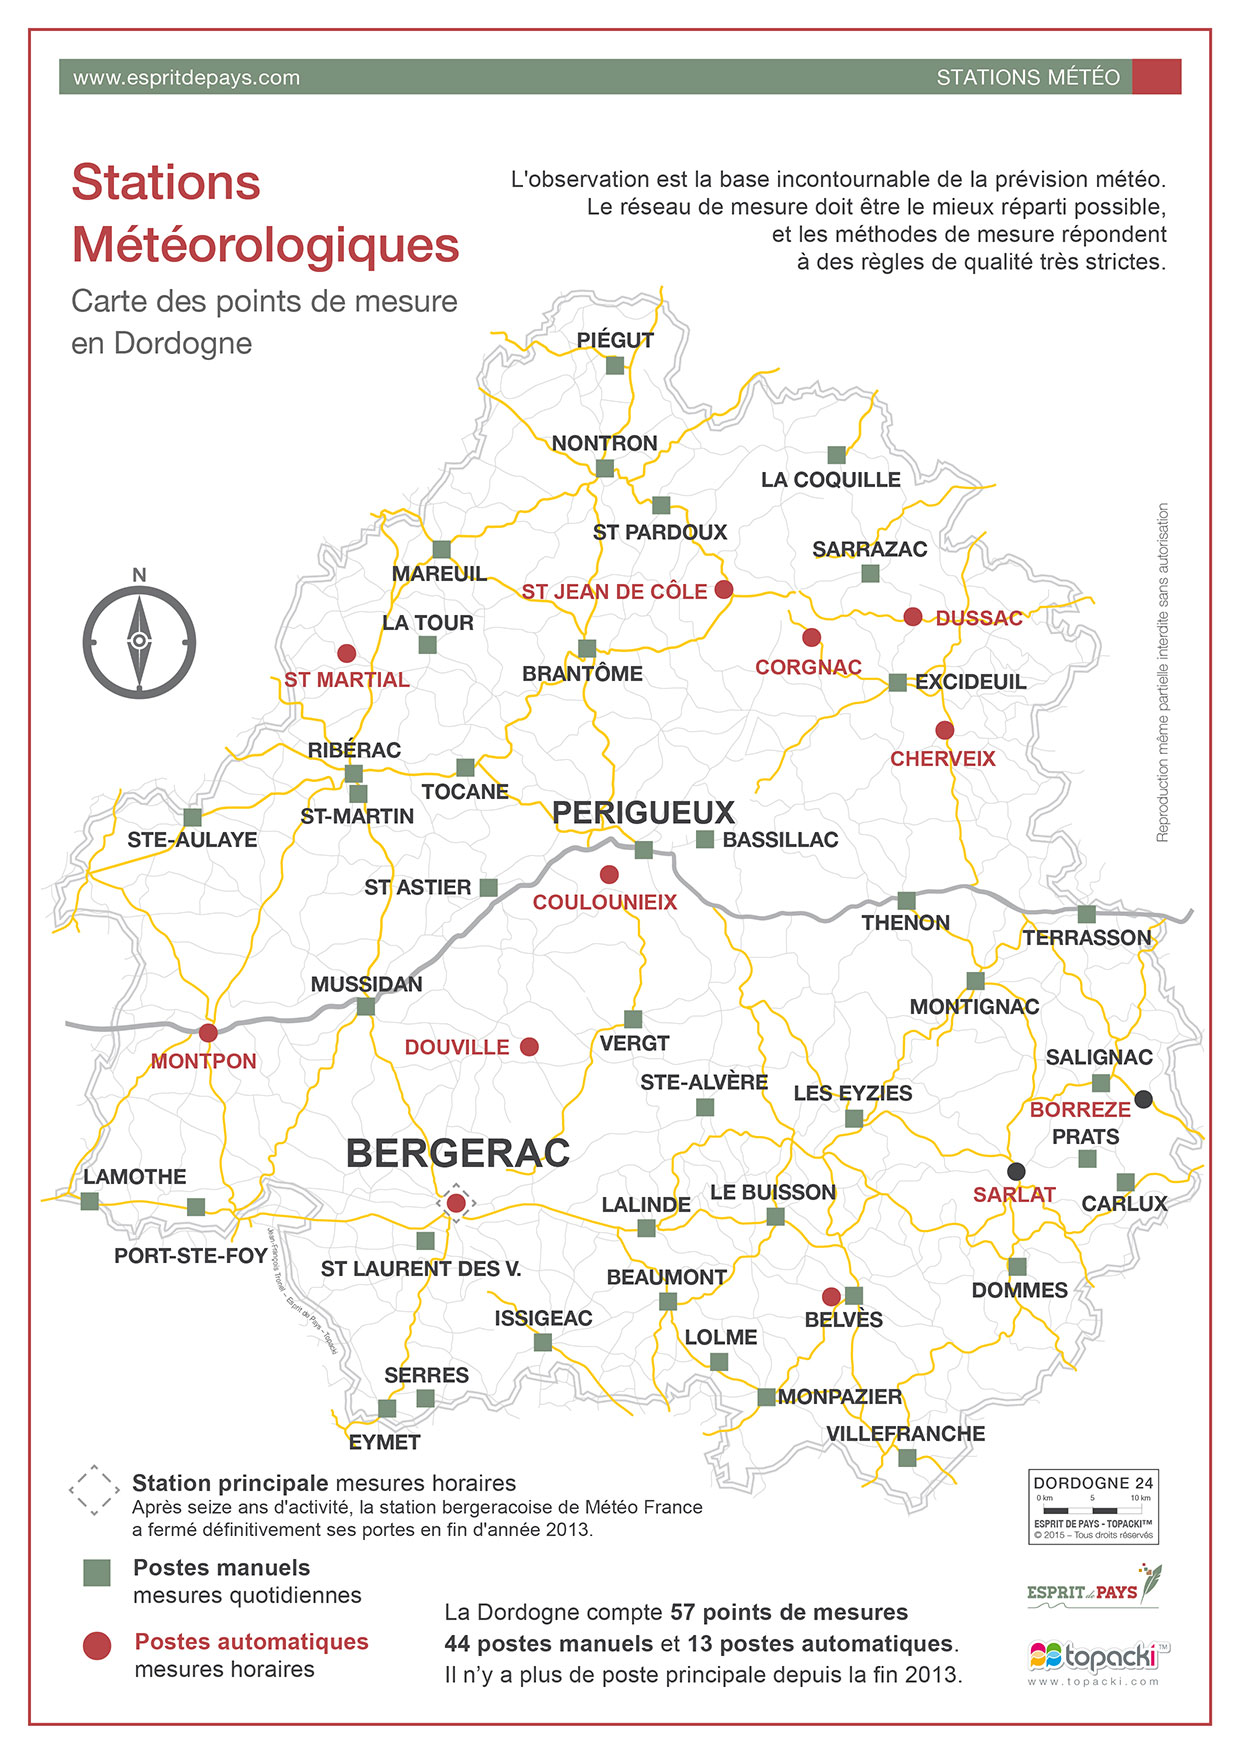 Cartographie : les stations météorologiques en Dordogne